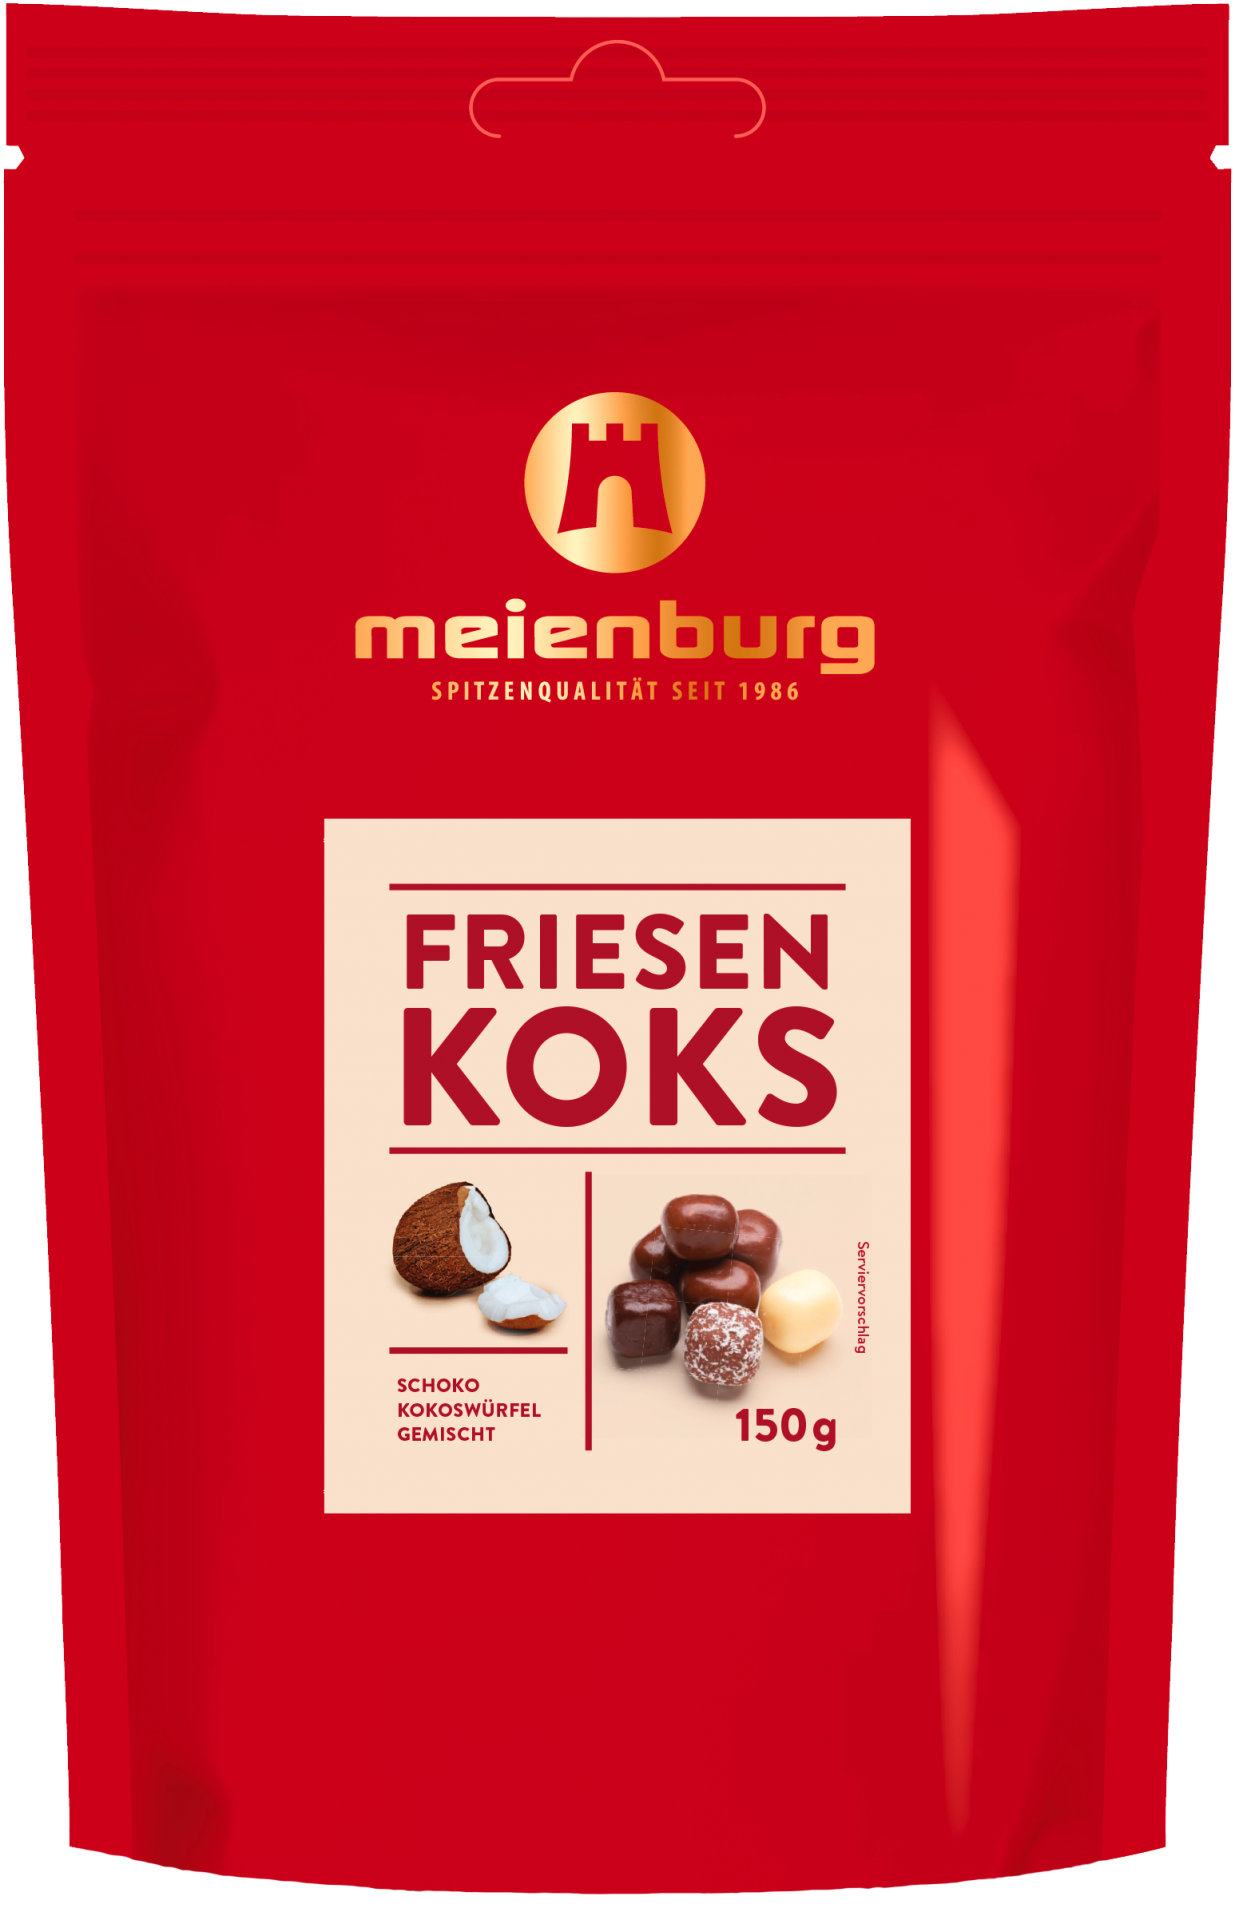 Meienburg Friesen Koks 150g